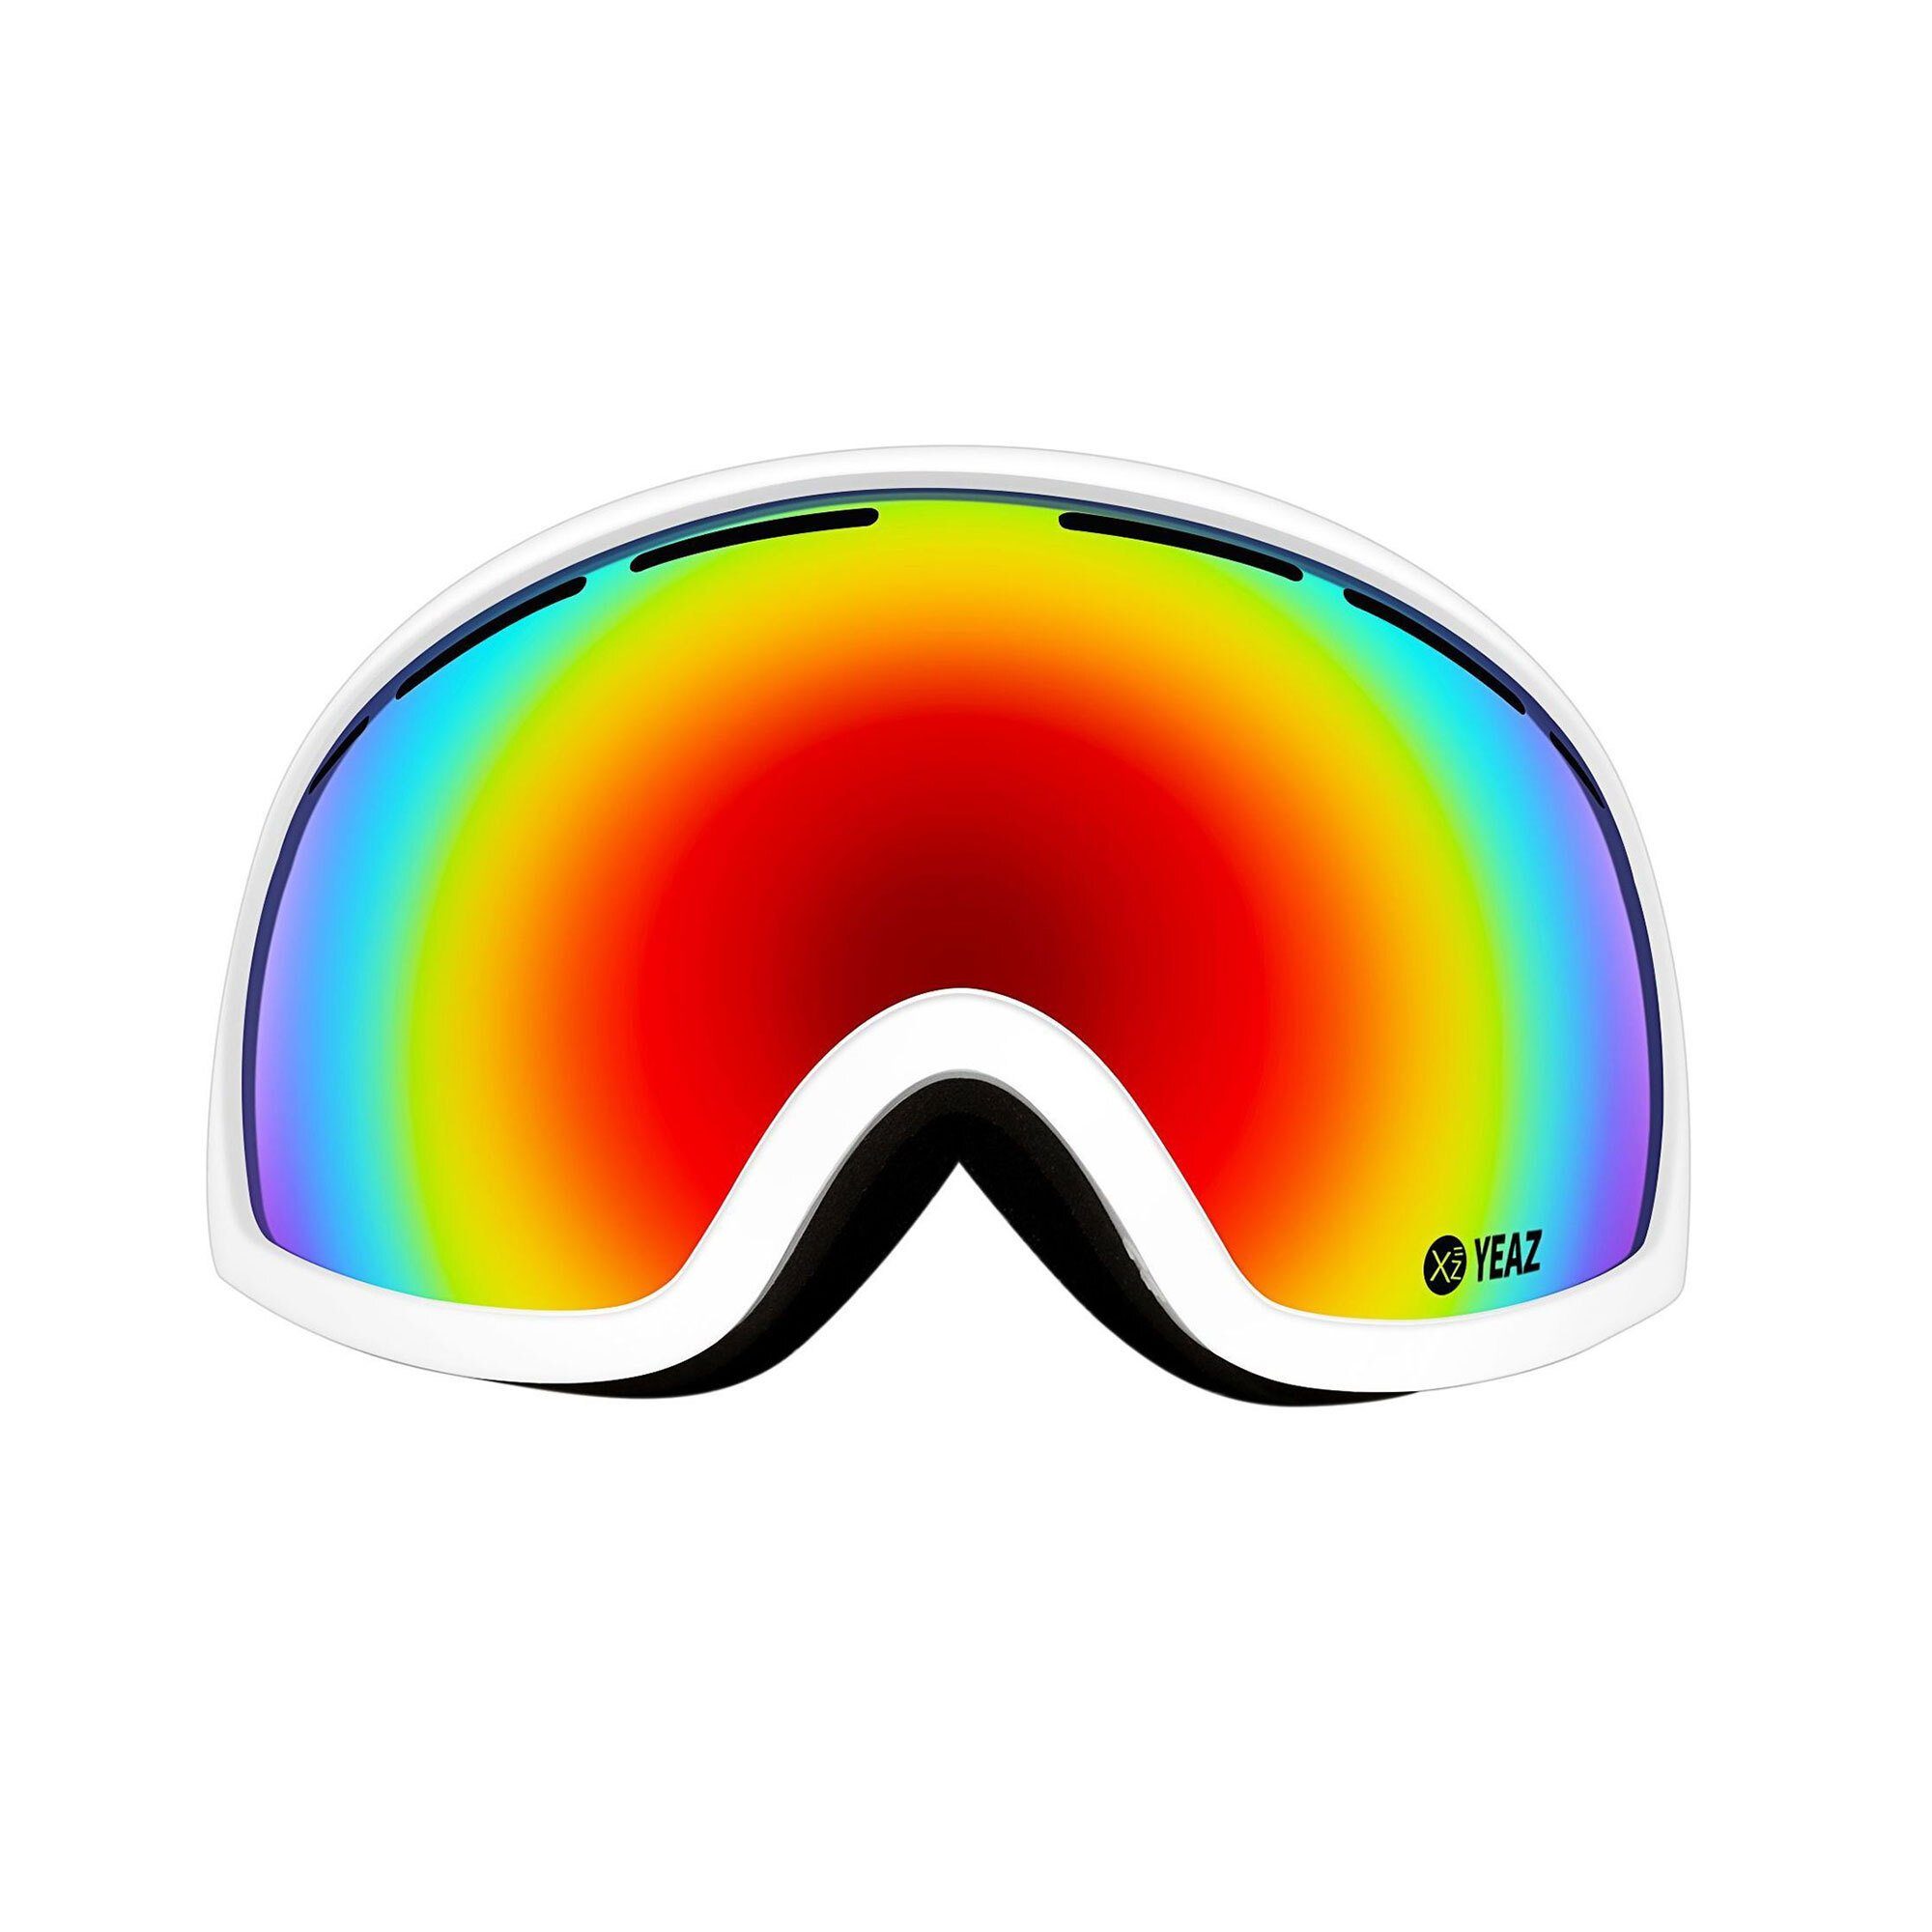 YEAZ Skibrille PEAK ski- snowboardbrille rot/weiß, Premium-Ski- und Snowboardbrille für Erwachsene und Jugendliche